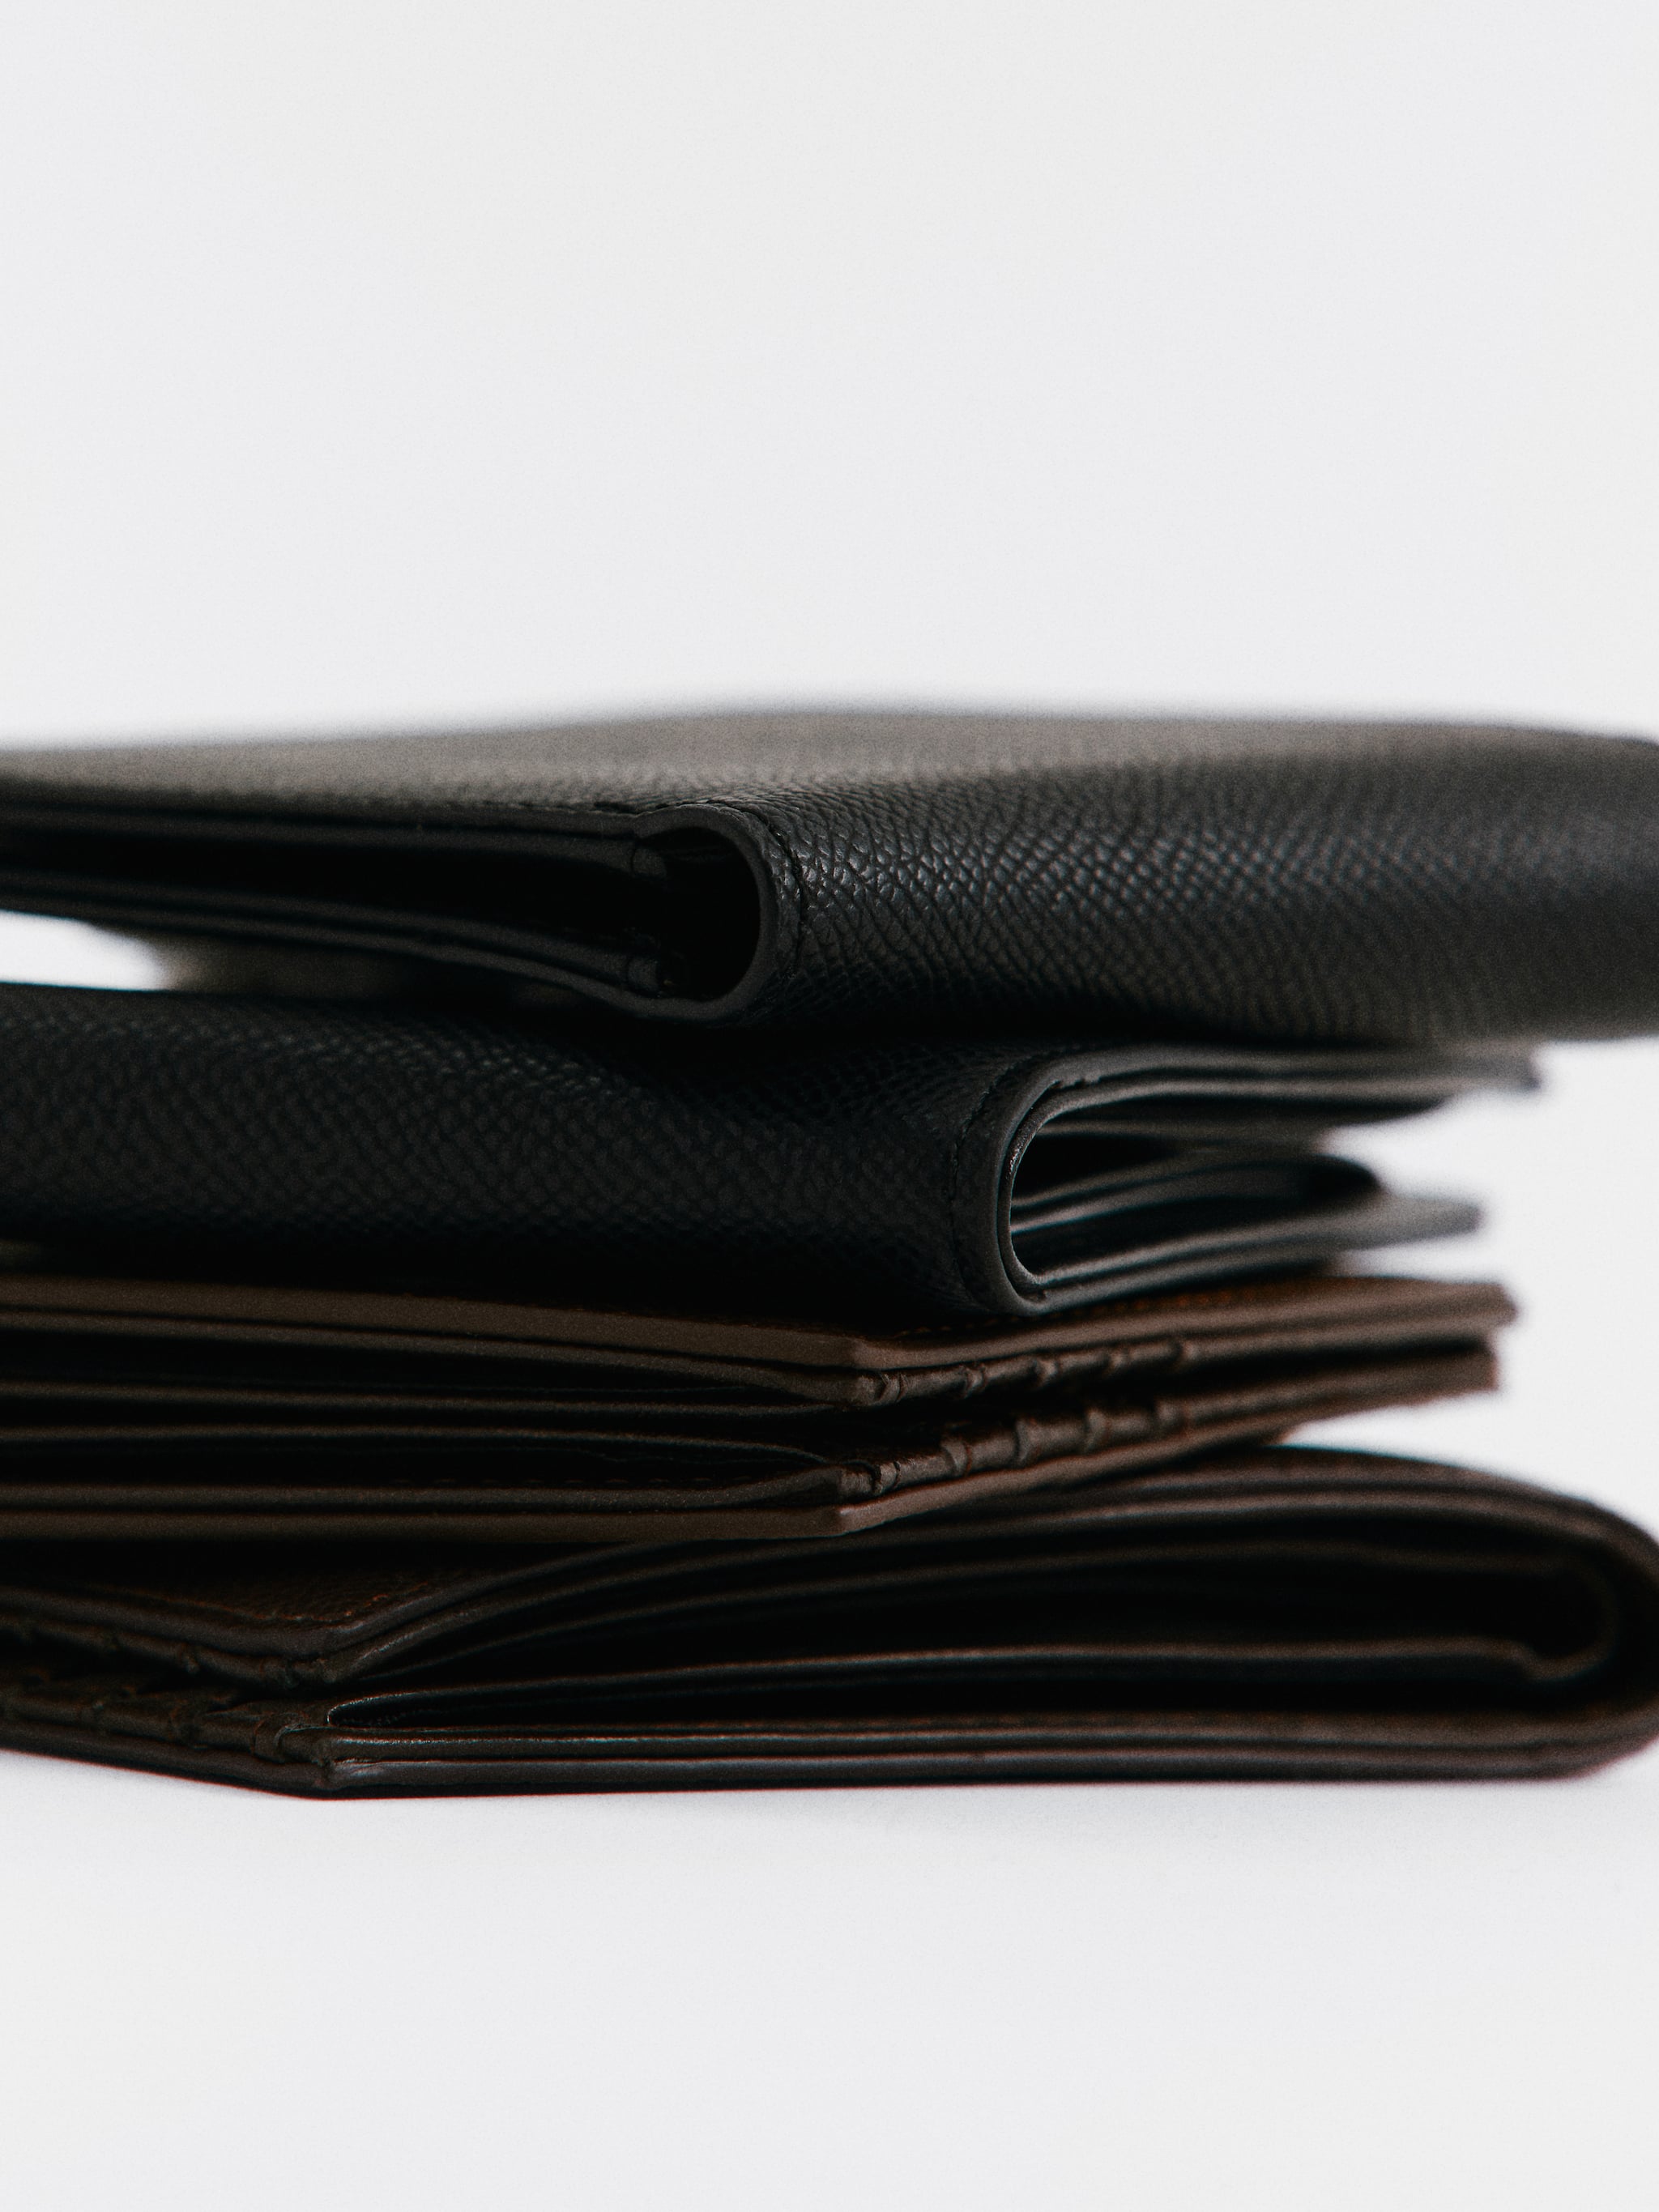 Бумажник-холдер с RFID-защитой - Деталь изделия 6